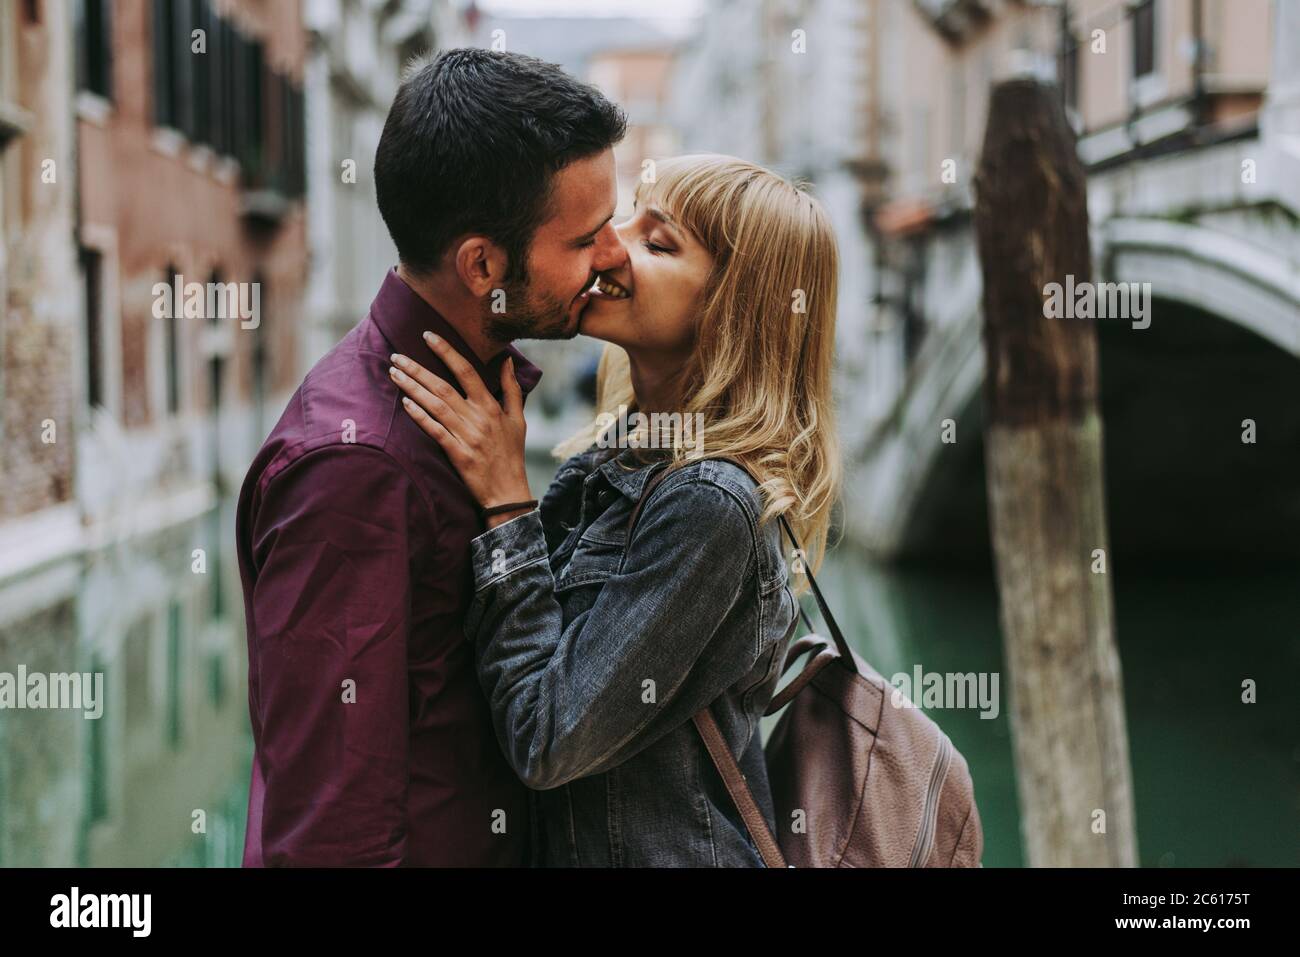 Wunderschönes junges Paar, das Spaß hat, während eines Besuchs in Venedig - Touristen, die in Italien reisen und die wichtigsten Sehenswürdigkeiten von Venedig besichtigen - Konzept Stockfoto